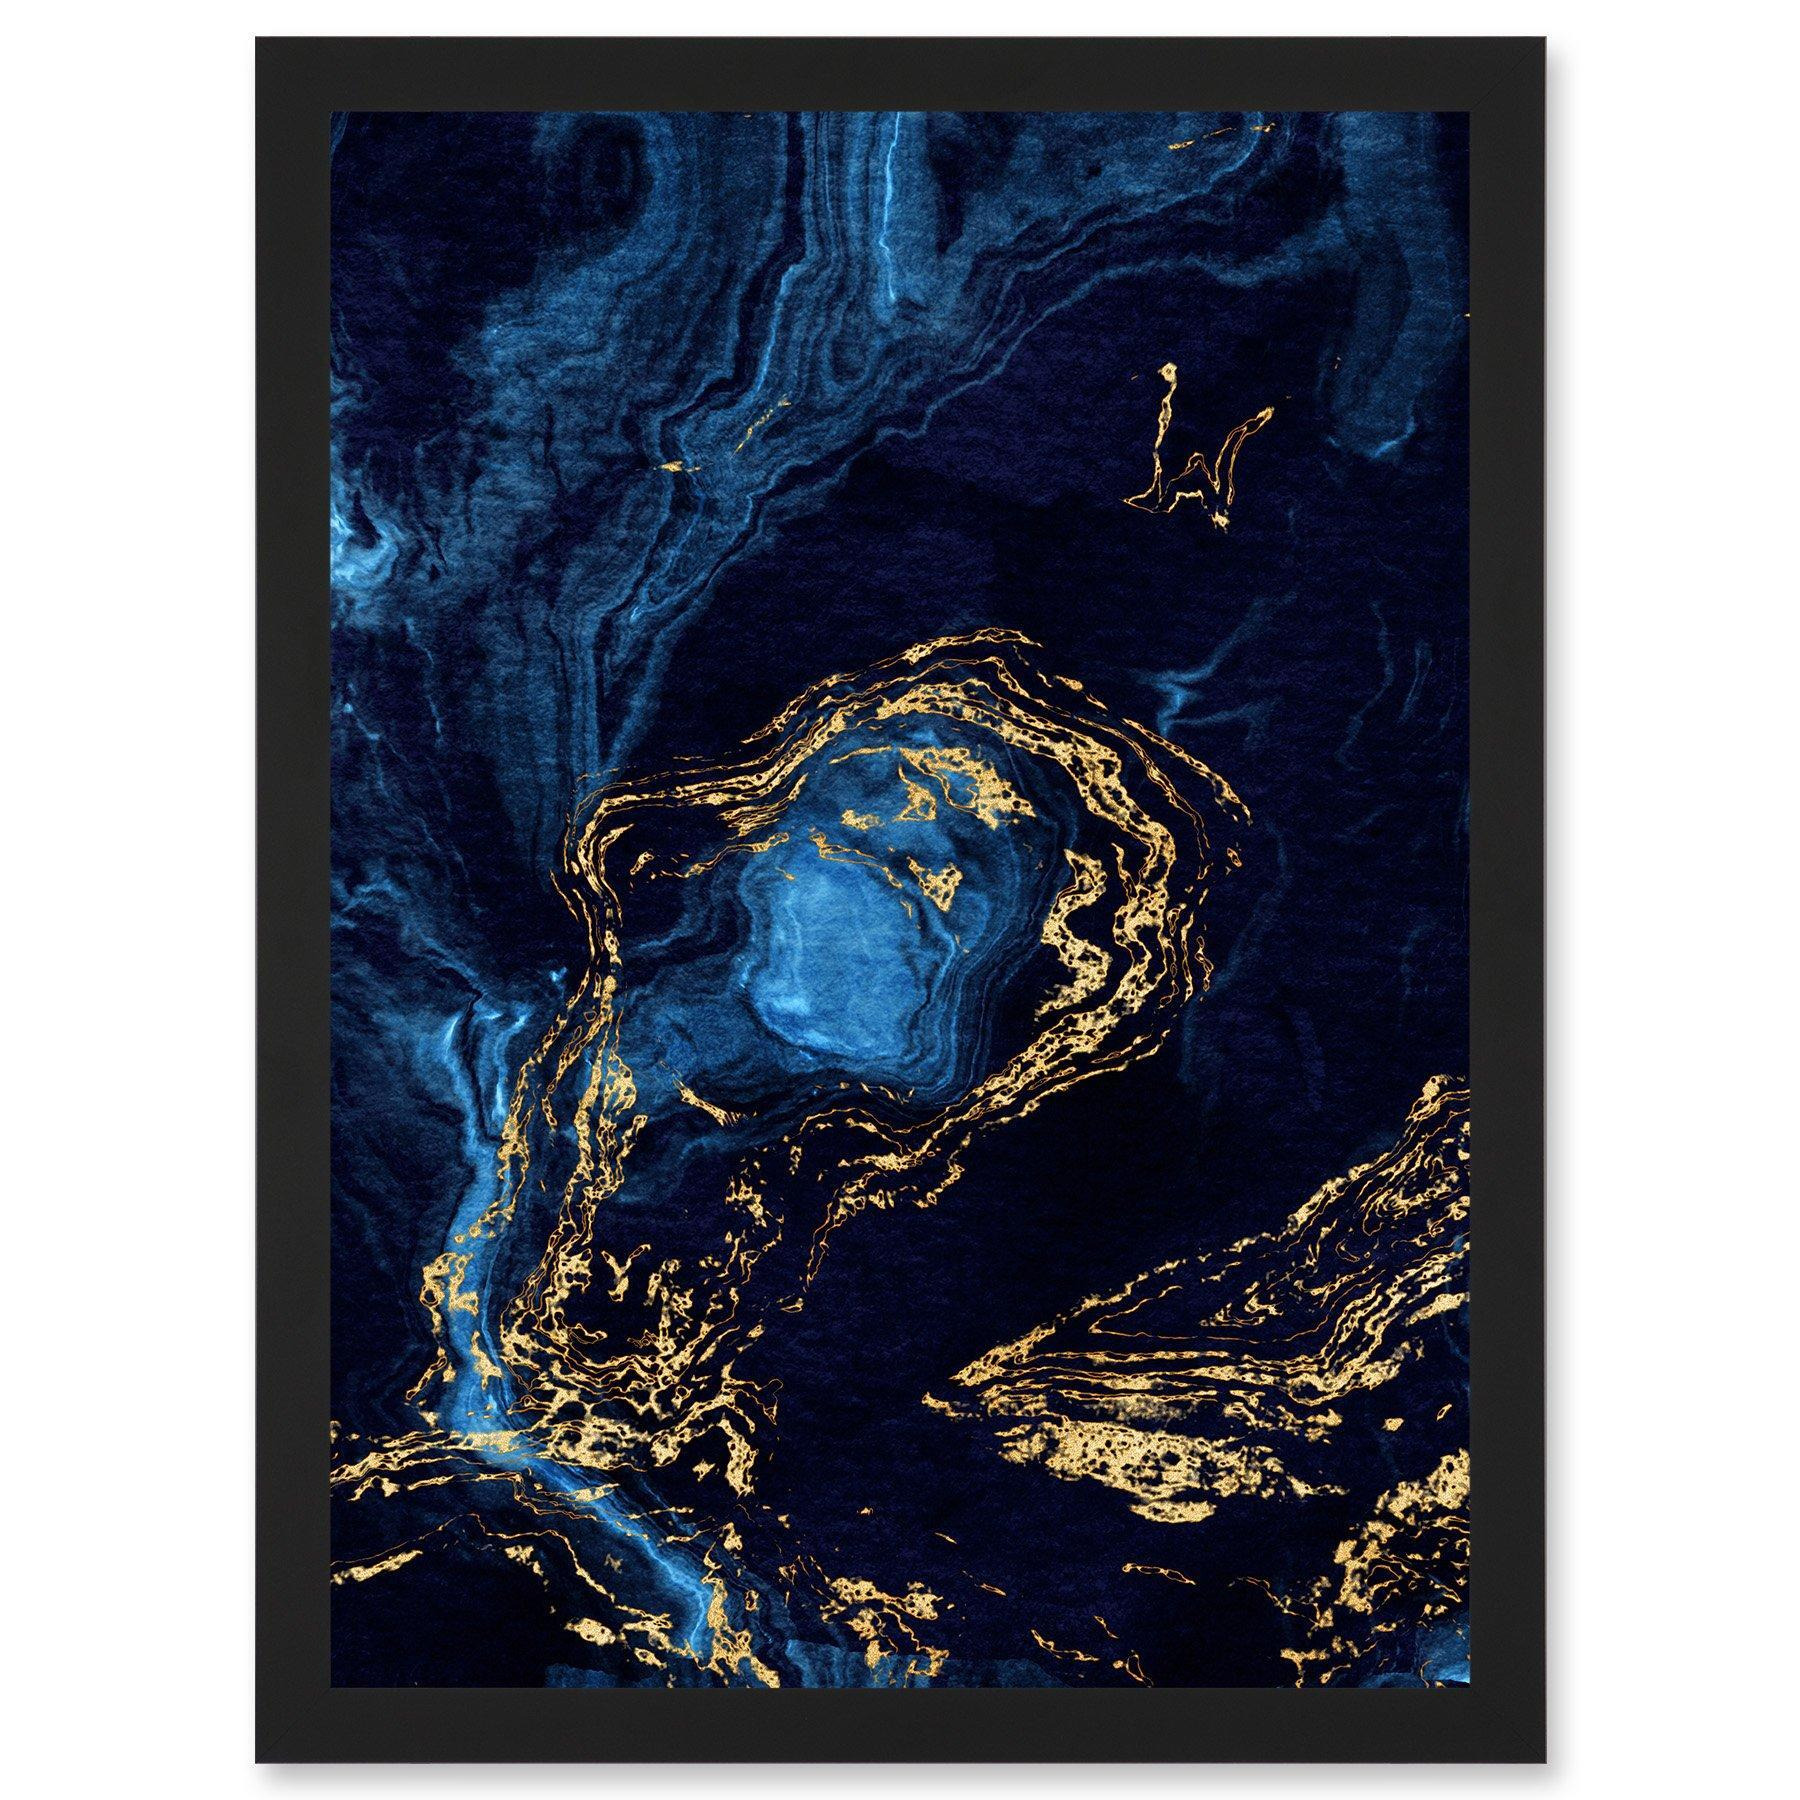 Abstract Dark Blue Gold Waves Modern Artwork Framed Wall Art Print A4 - image 1